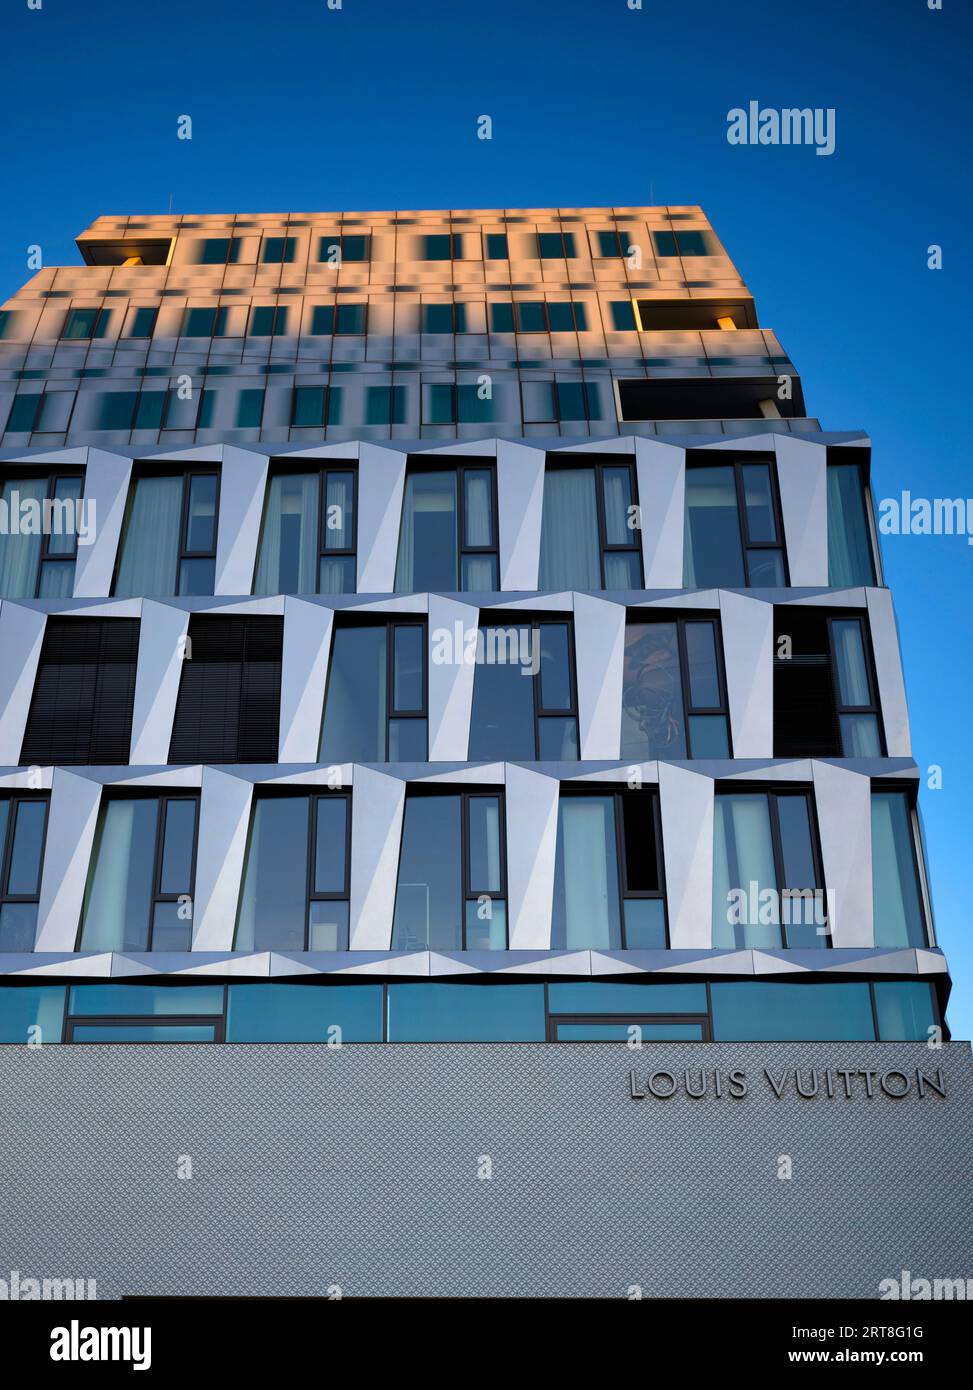 Louis Vuitton Brand Store, logo, boutique, Dorotheen quartier, DOQU, centre commercial, heure bleue, Stuttgart, Baden-Wuerttemberg, Allemagne Banque D'Images